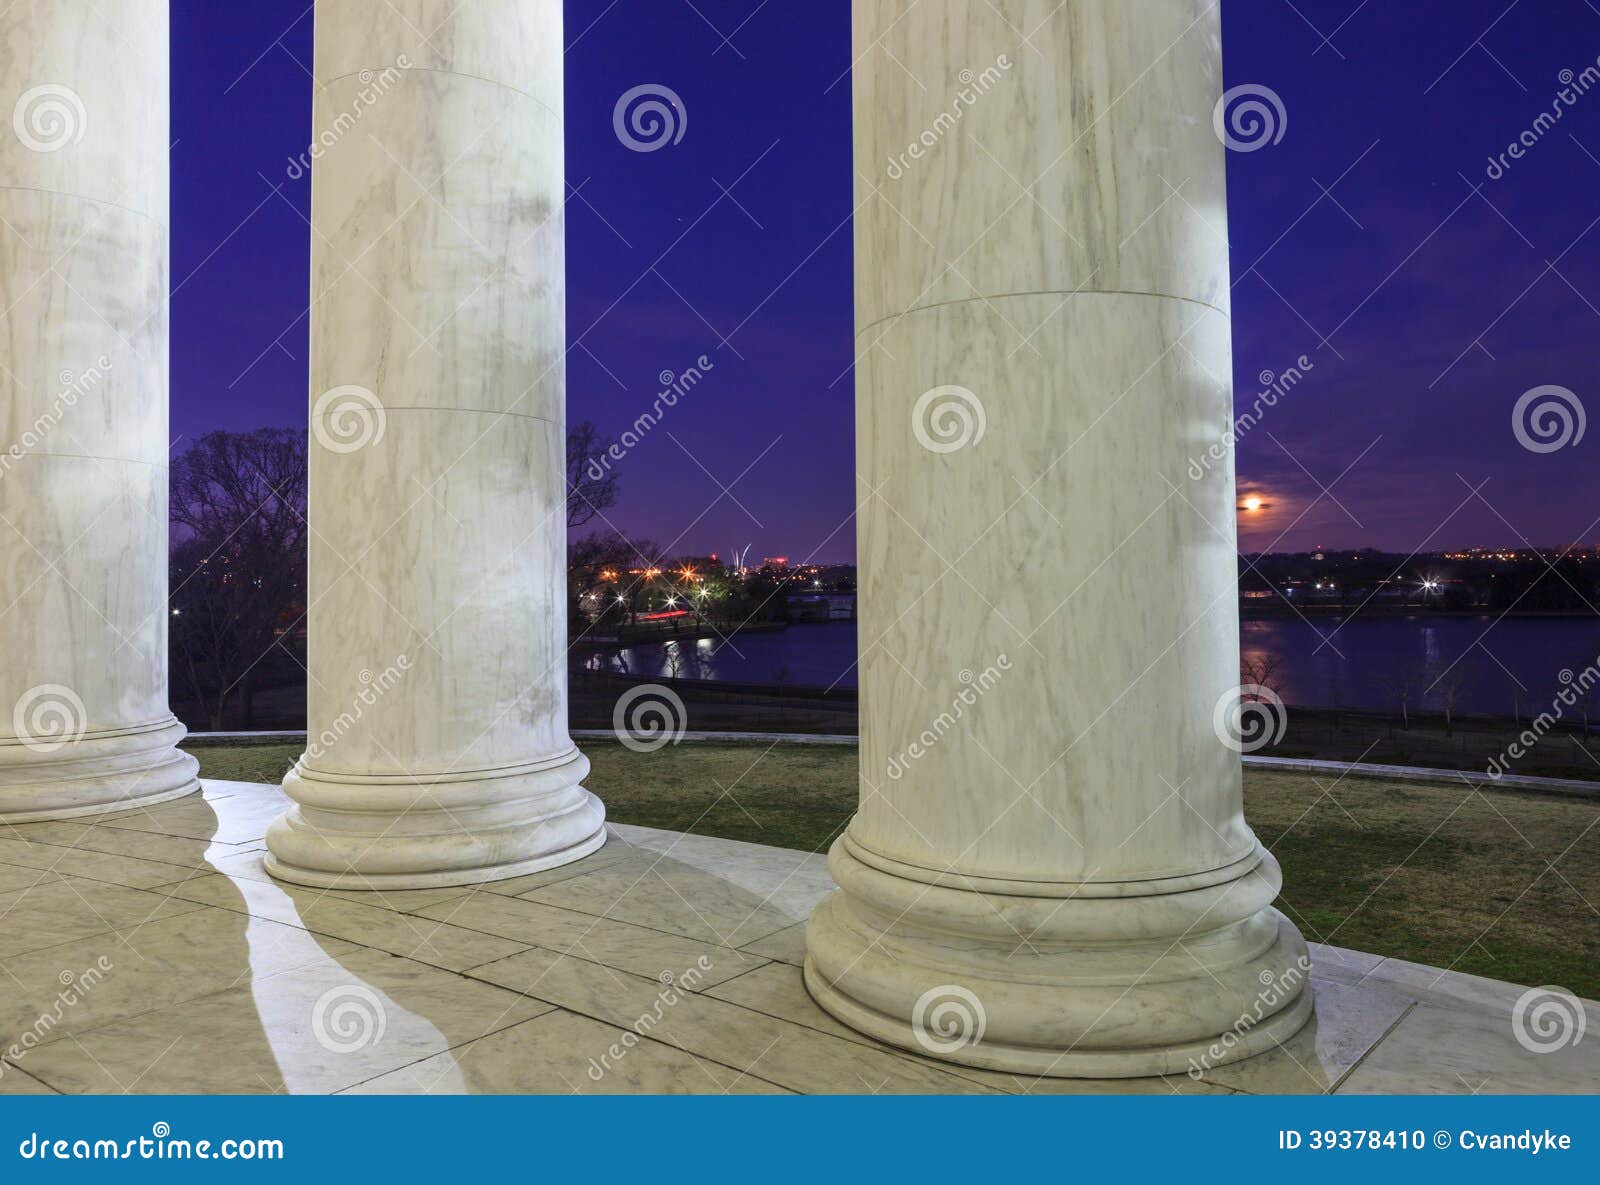 marble columns thomas jefferson memorial washington dc